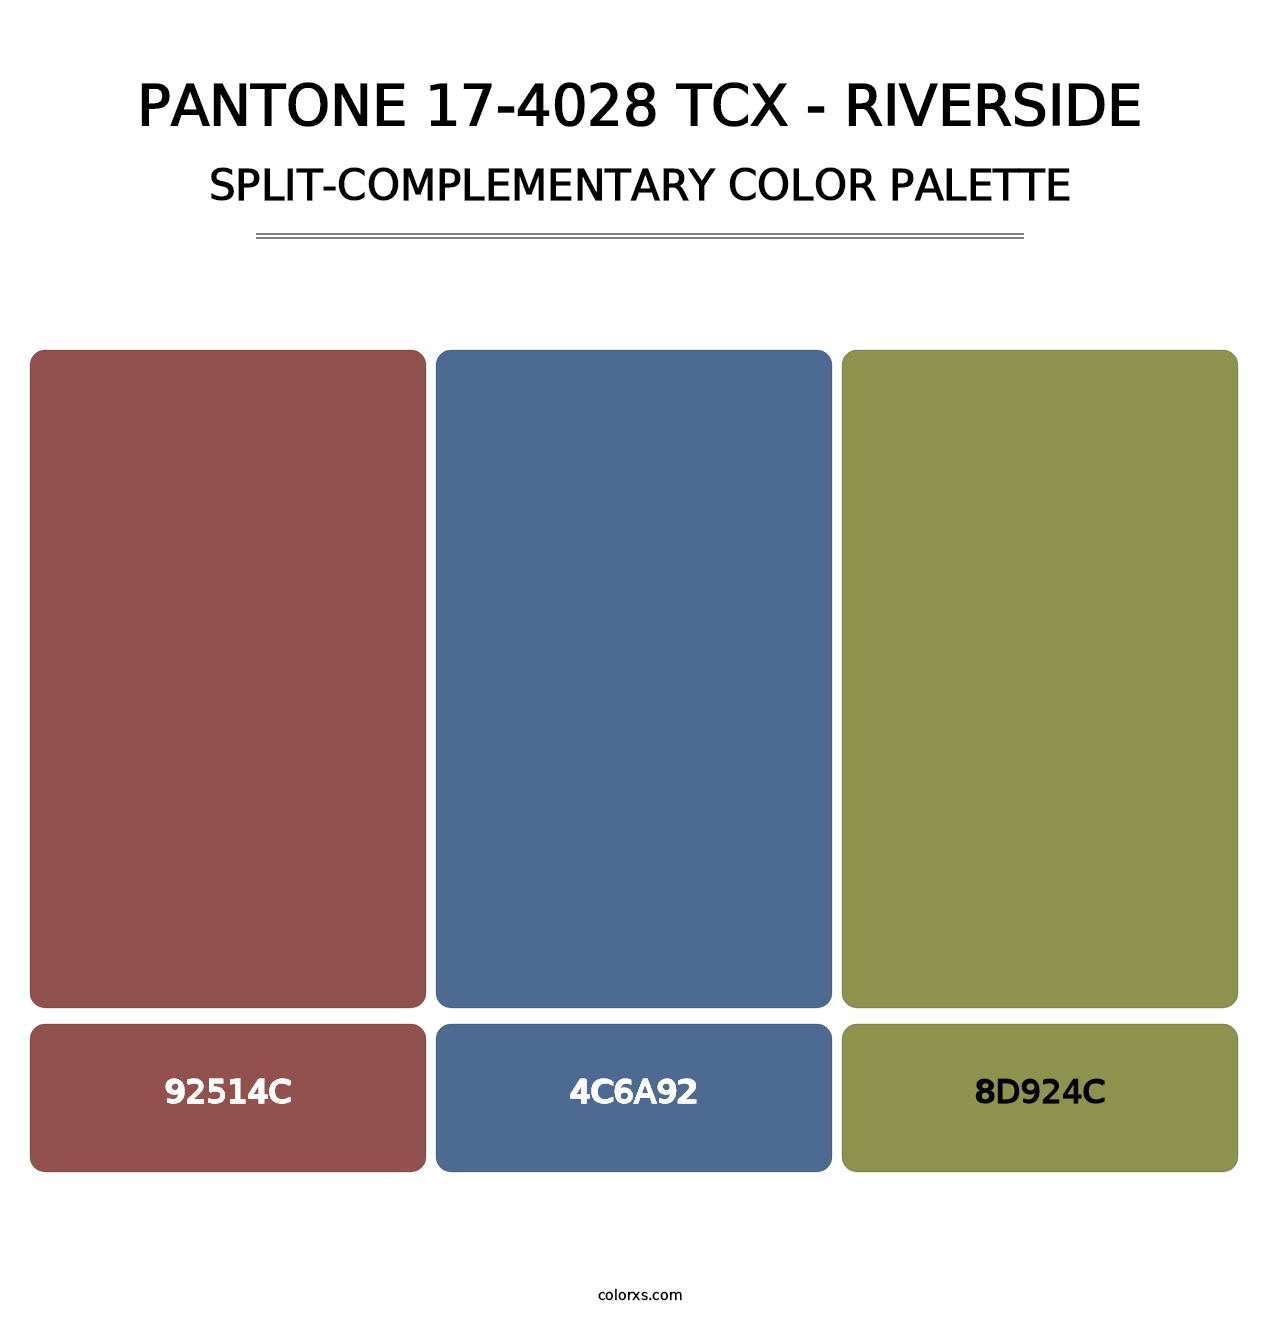 PANTONE 17-4028 TCX - Riverside - Split-Complementary Color Palette